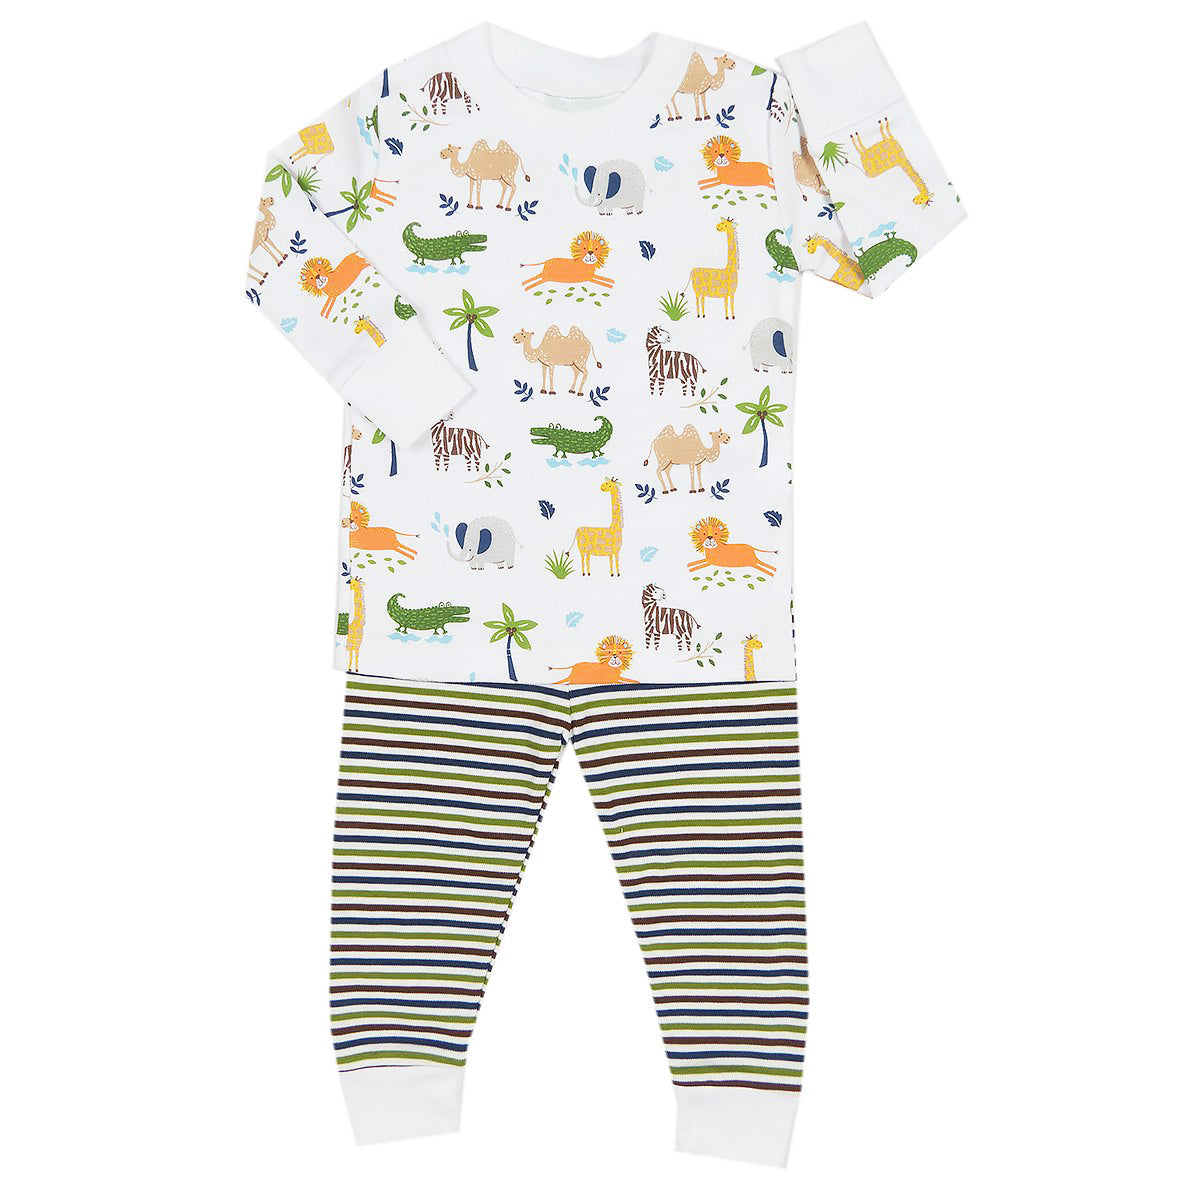 Jungle Jaunt Animal Print Pajamas